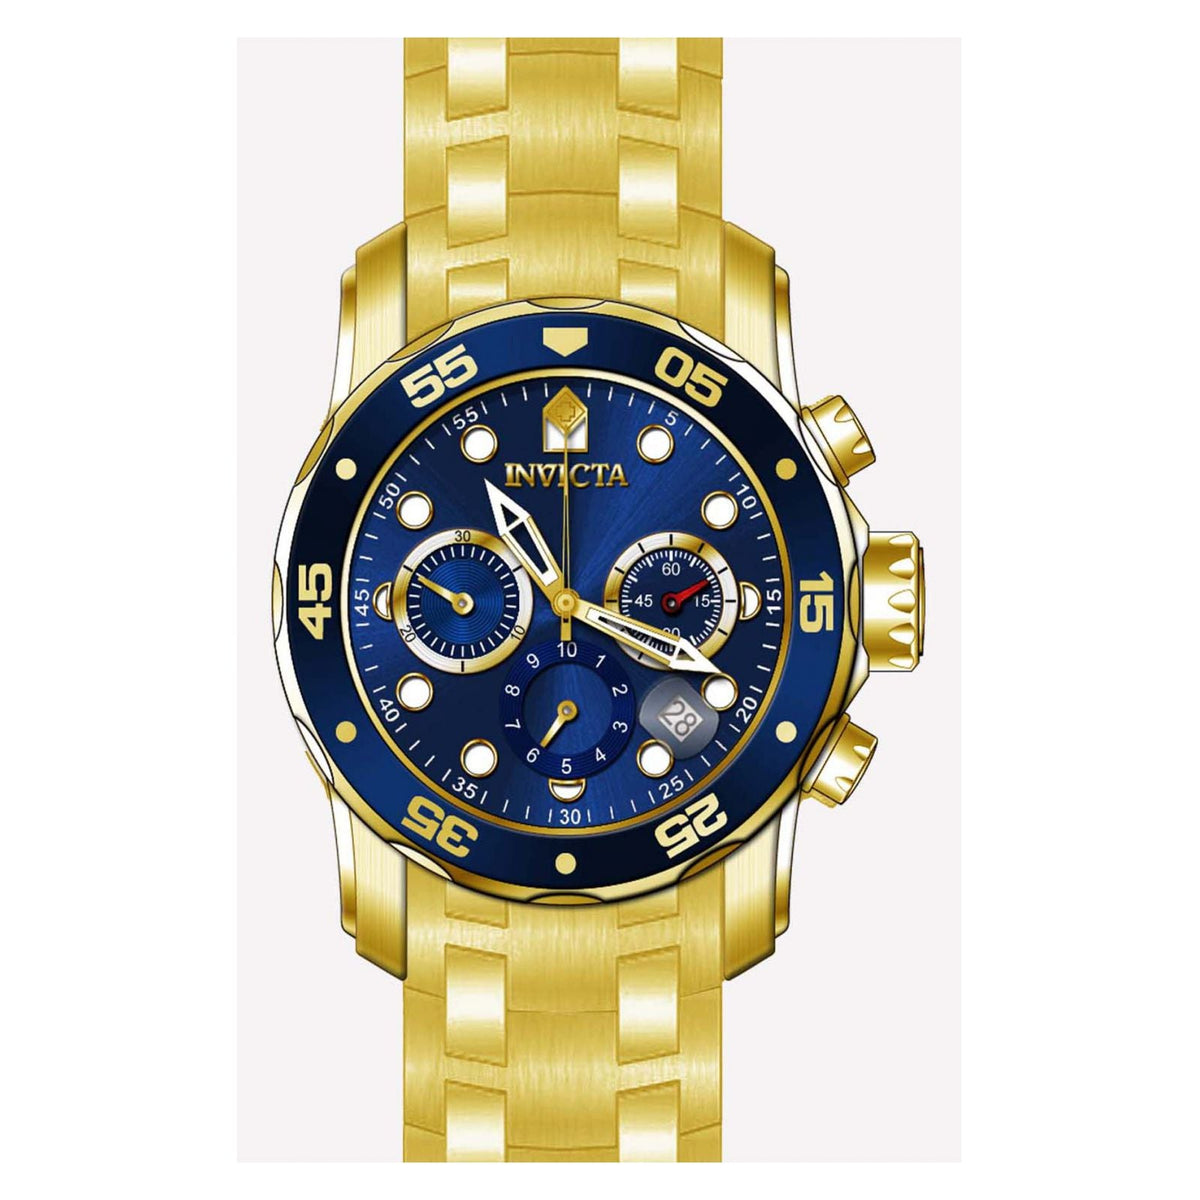 Invicta Watch - Reloj Invicta pro diver 9743 ✓Resistencia